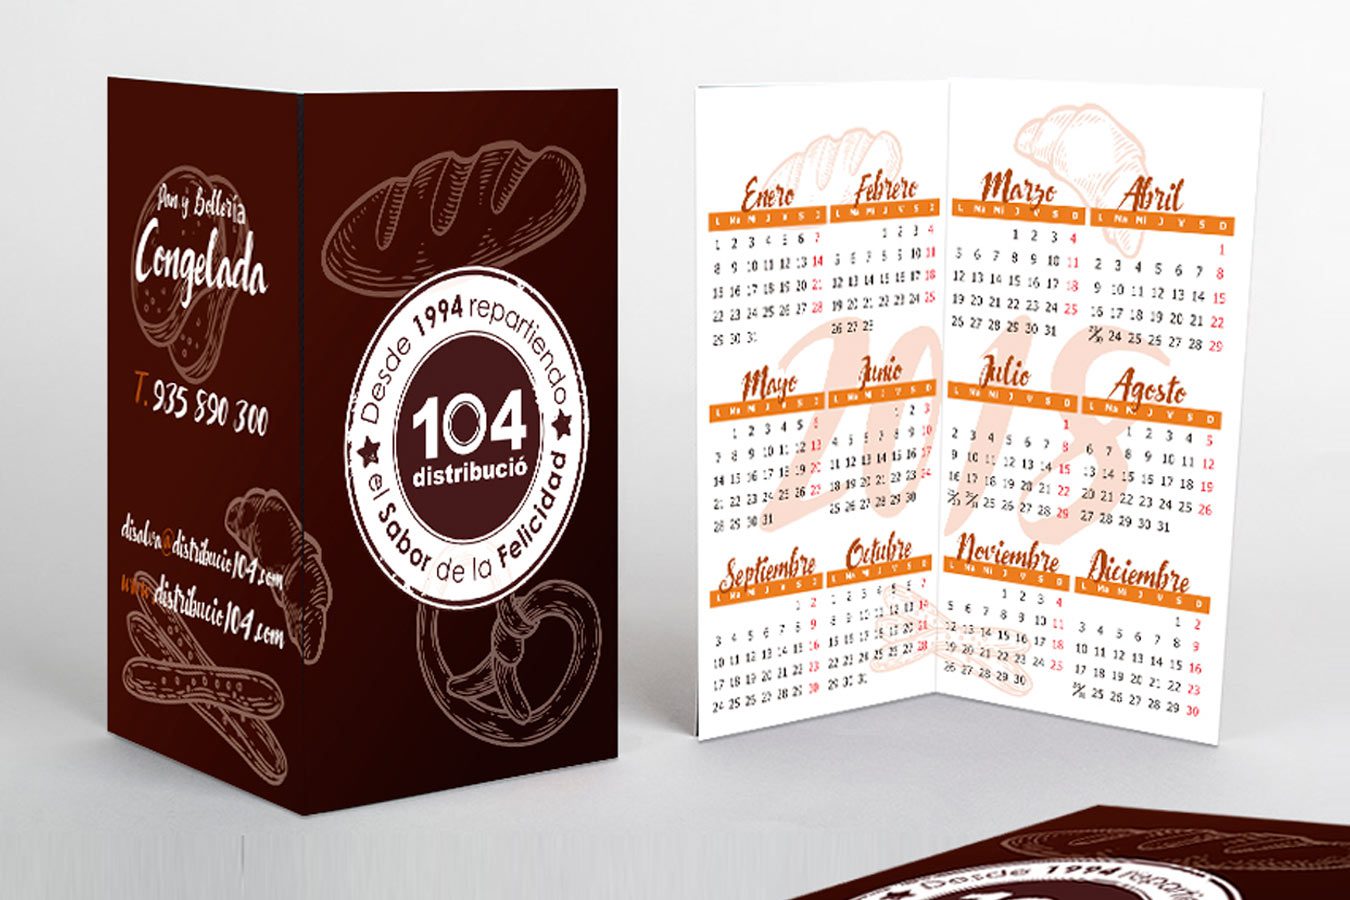 Diseño e Imprenta Calendarios Corporativos y/o Particulares | IDG GRUP WEB - IMAGEN CORPORATIVA Y PUBLICIDAD | 930 130 265 | Calendarios para Empresas y Particulares. Calendario de mesa, Calendario de pared, Calendario de bolsillo, Calendario con faldilla,...